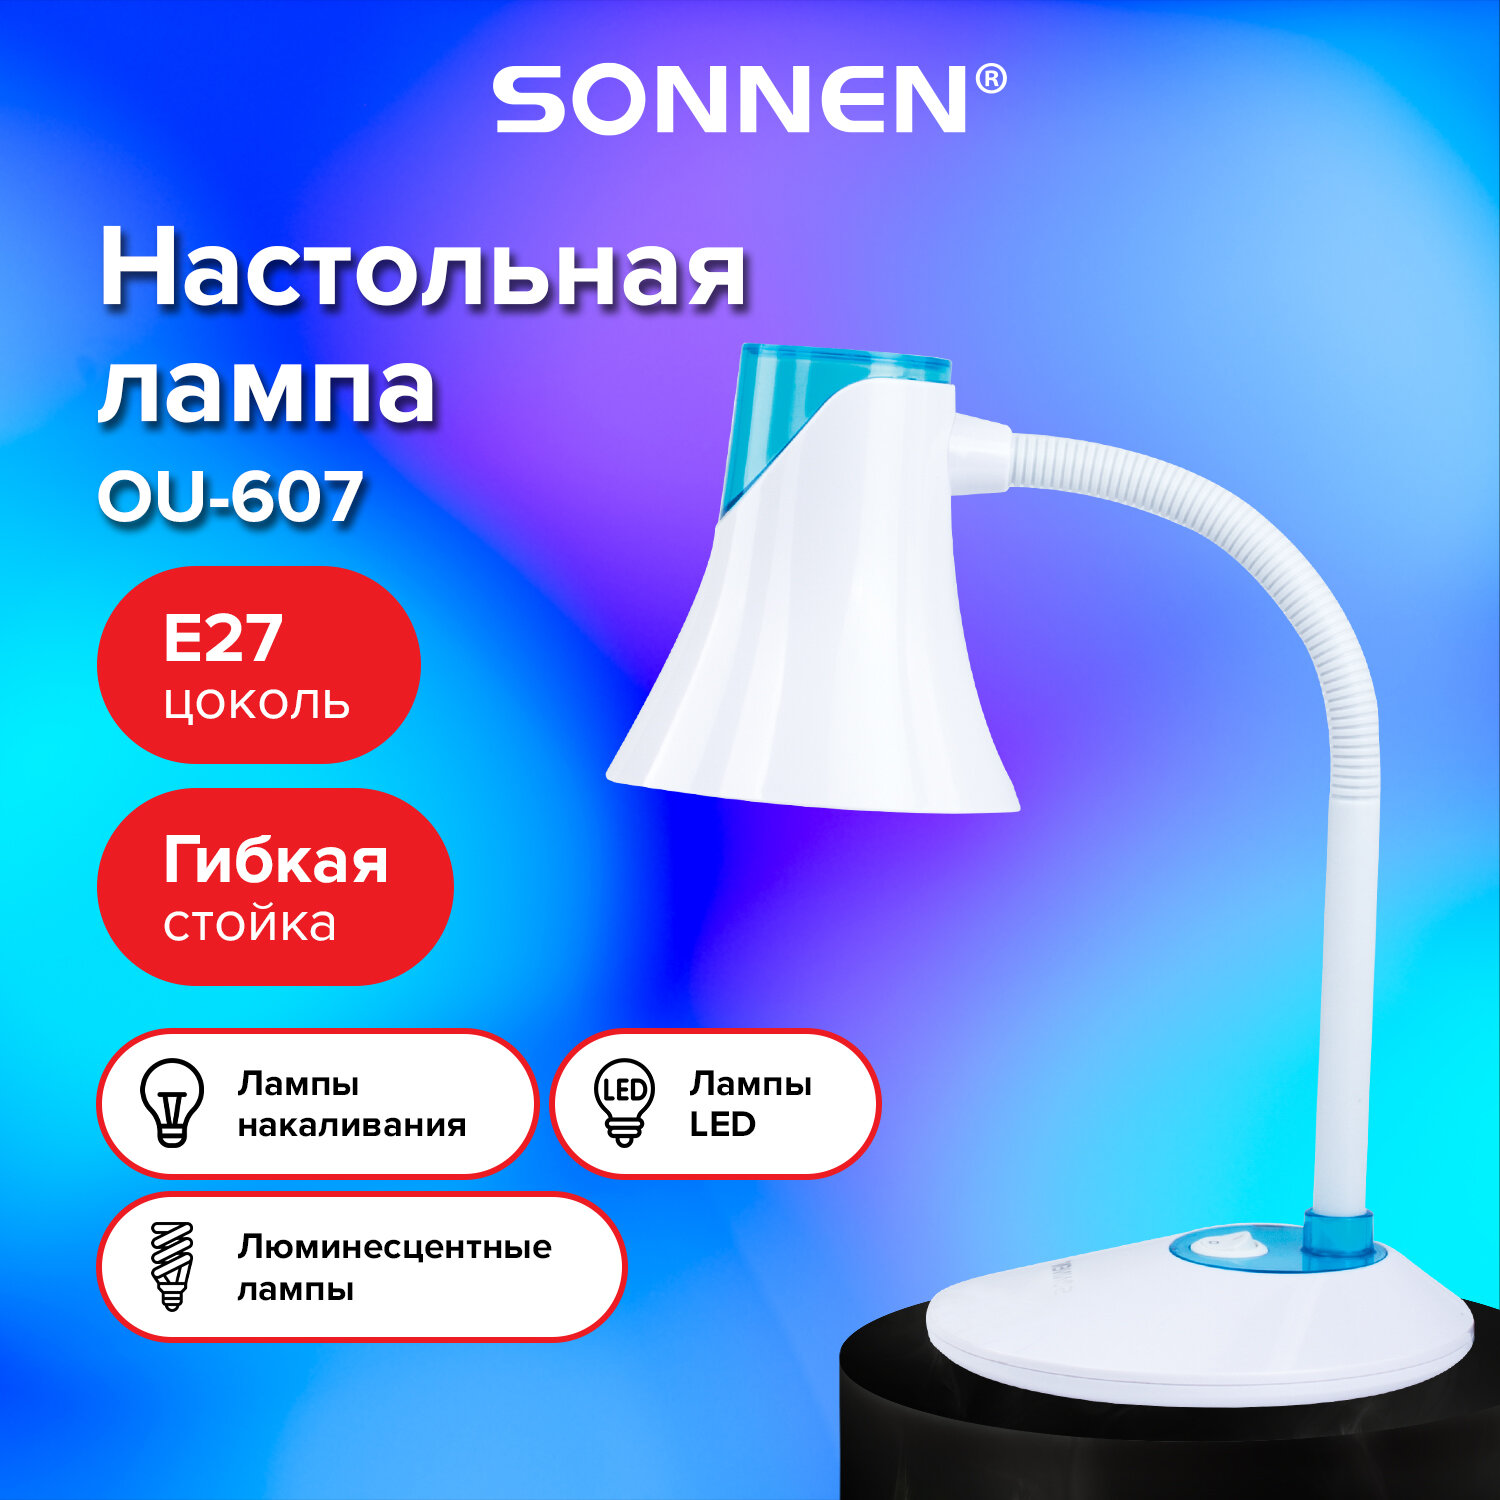 Sonnen Светильник настольный SONNEN OU-607, на подставке, цоколь Е27, белый/синий, 236681